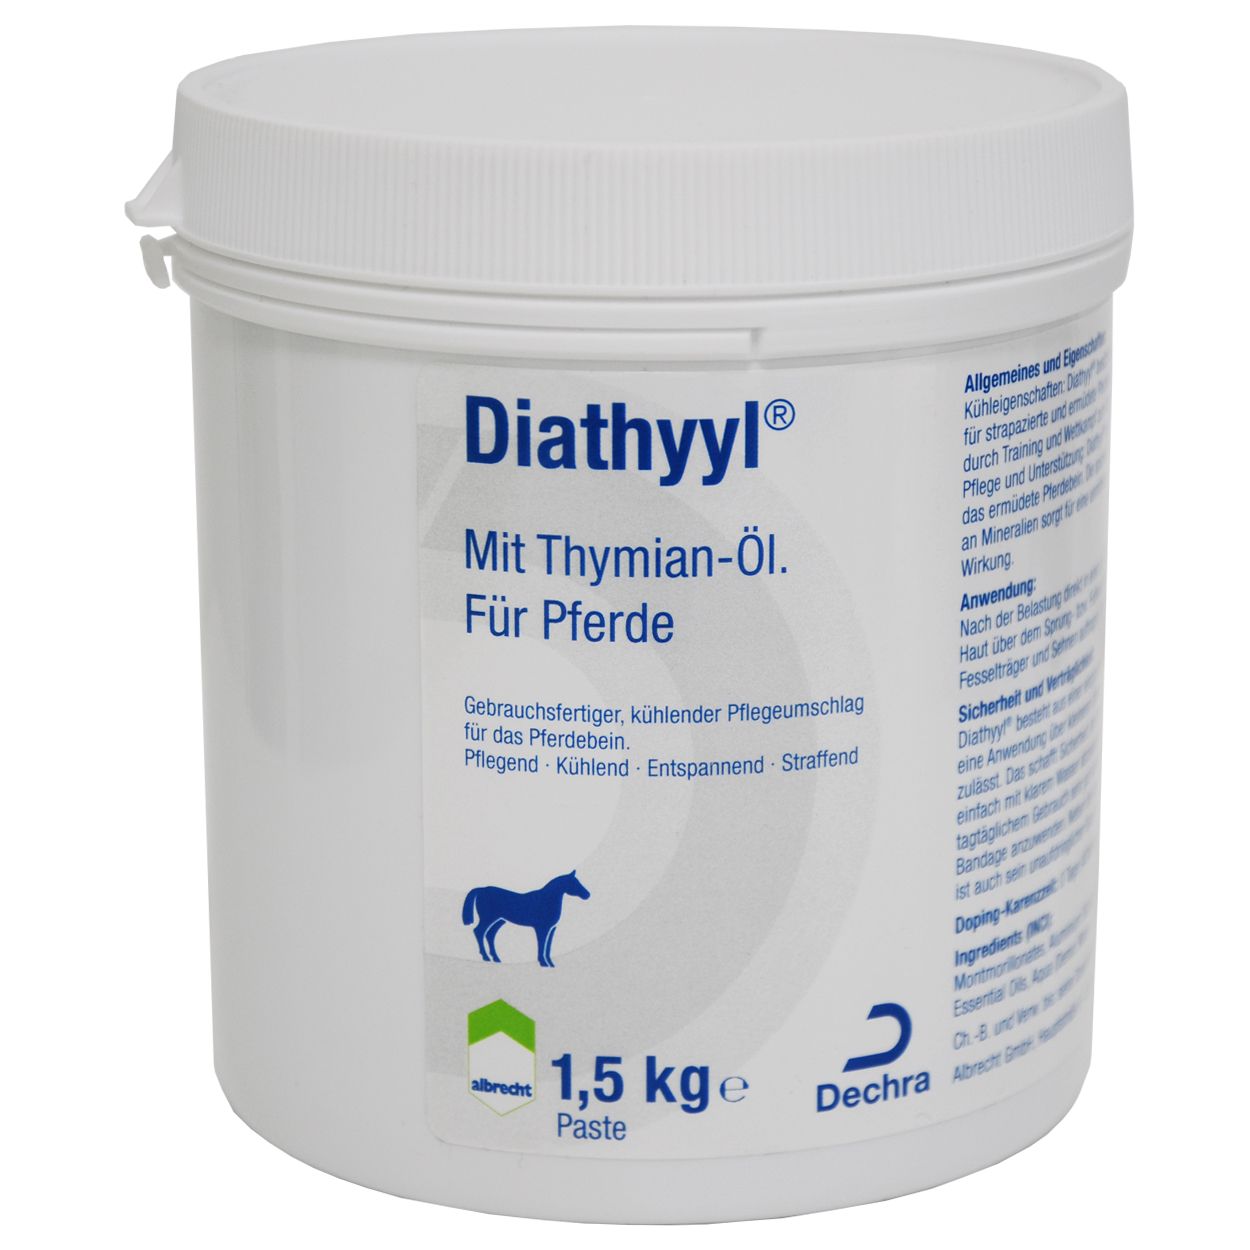 Diathyyl, kühlender Pflegeumschlag für das Pferdebein mit ThymianÖl